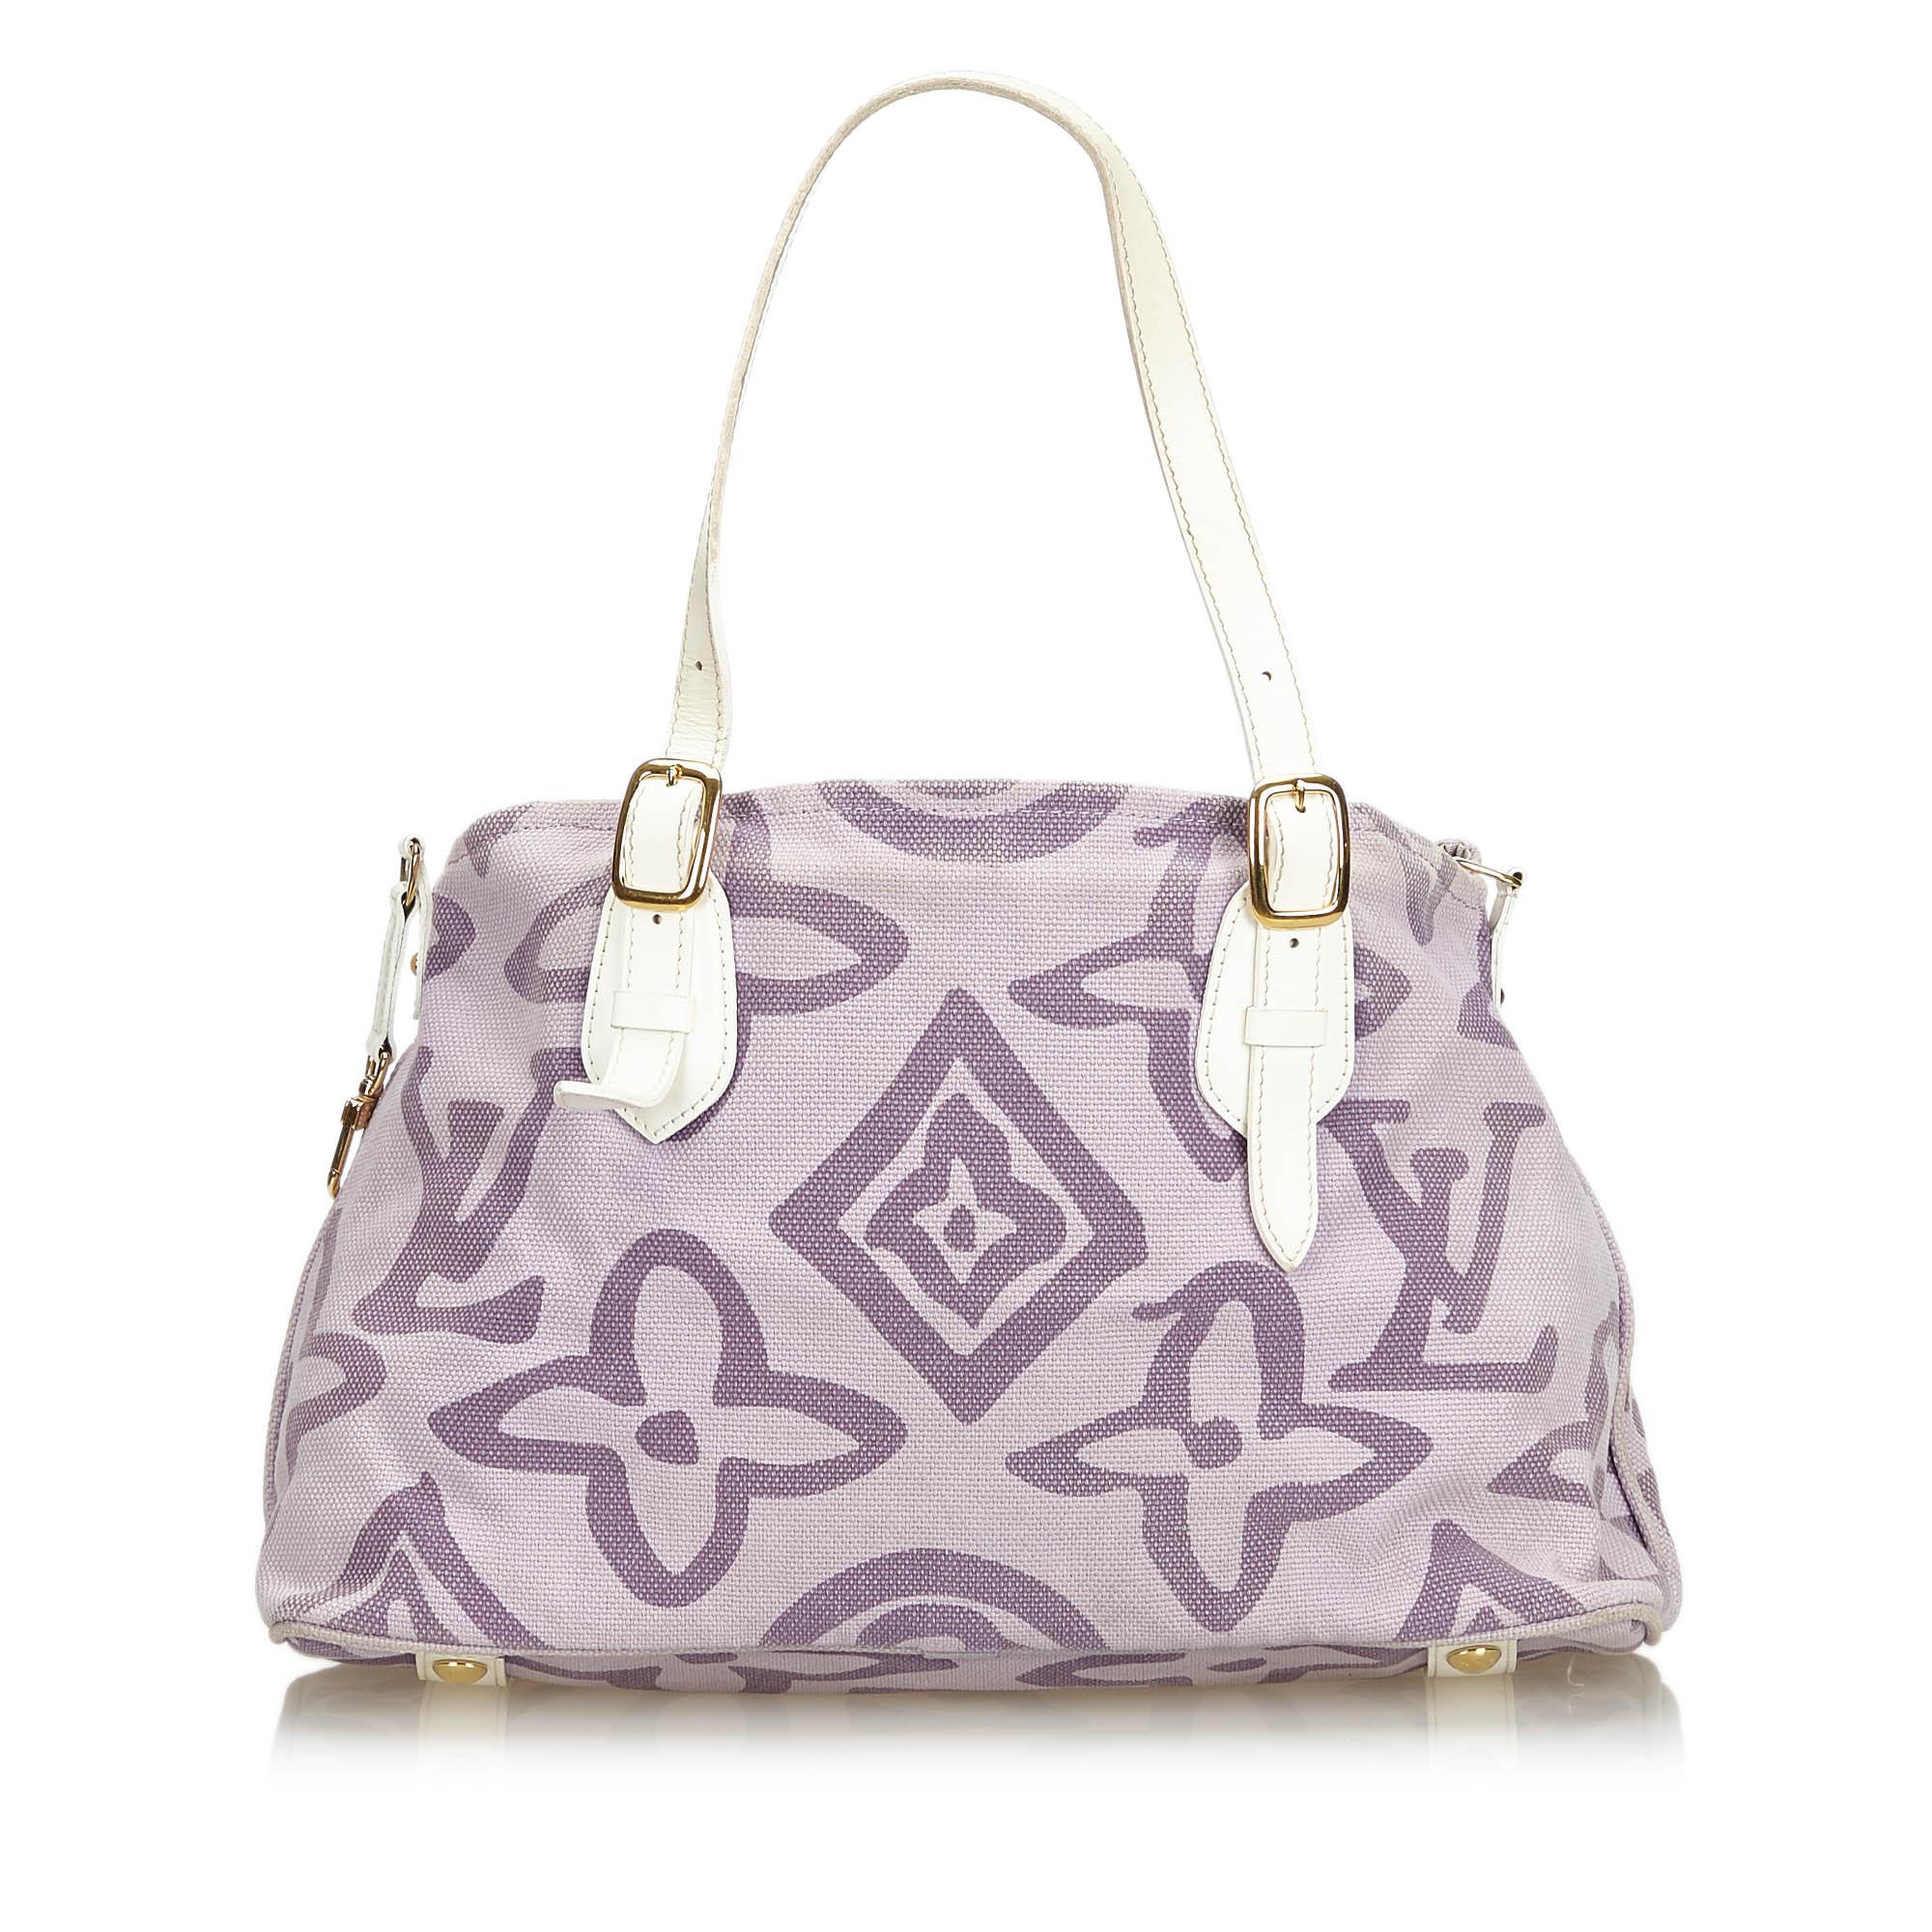 Louis Vuitton Canvas White/purple Monogram Tahitienne Cabas Pm Bag - Lyst